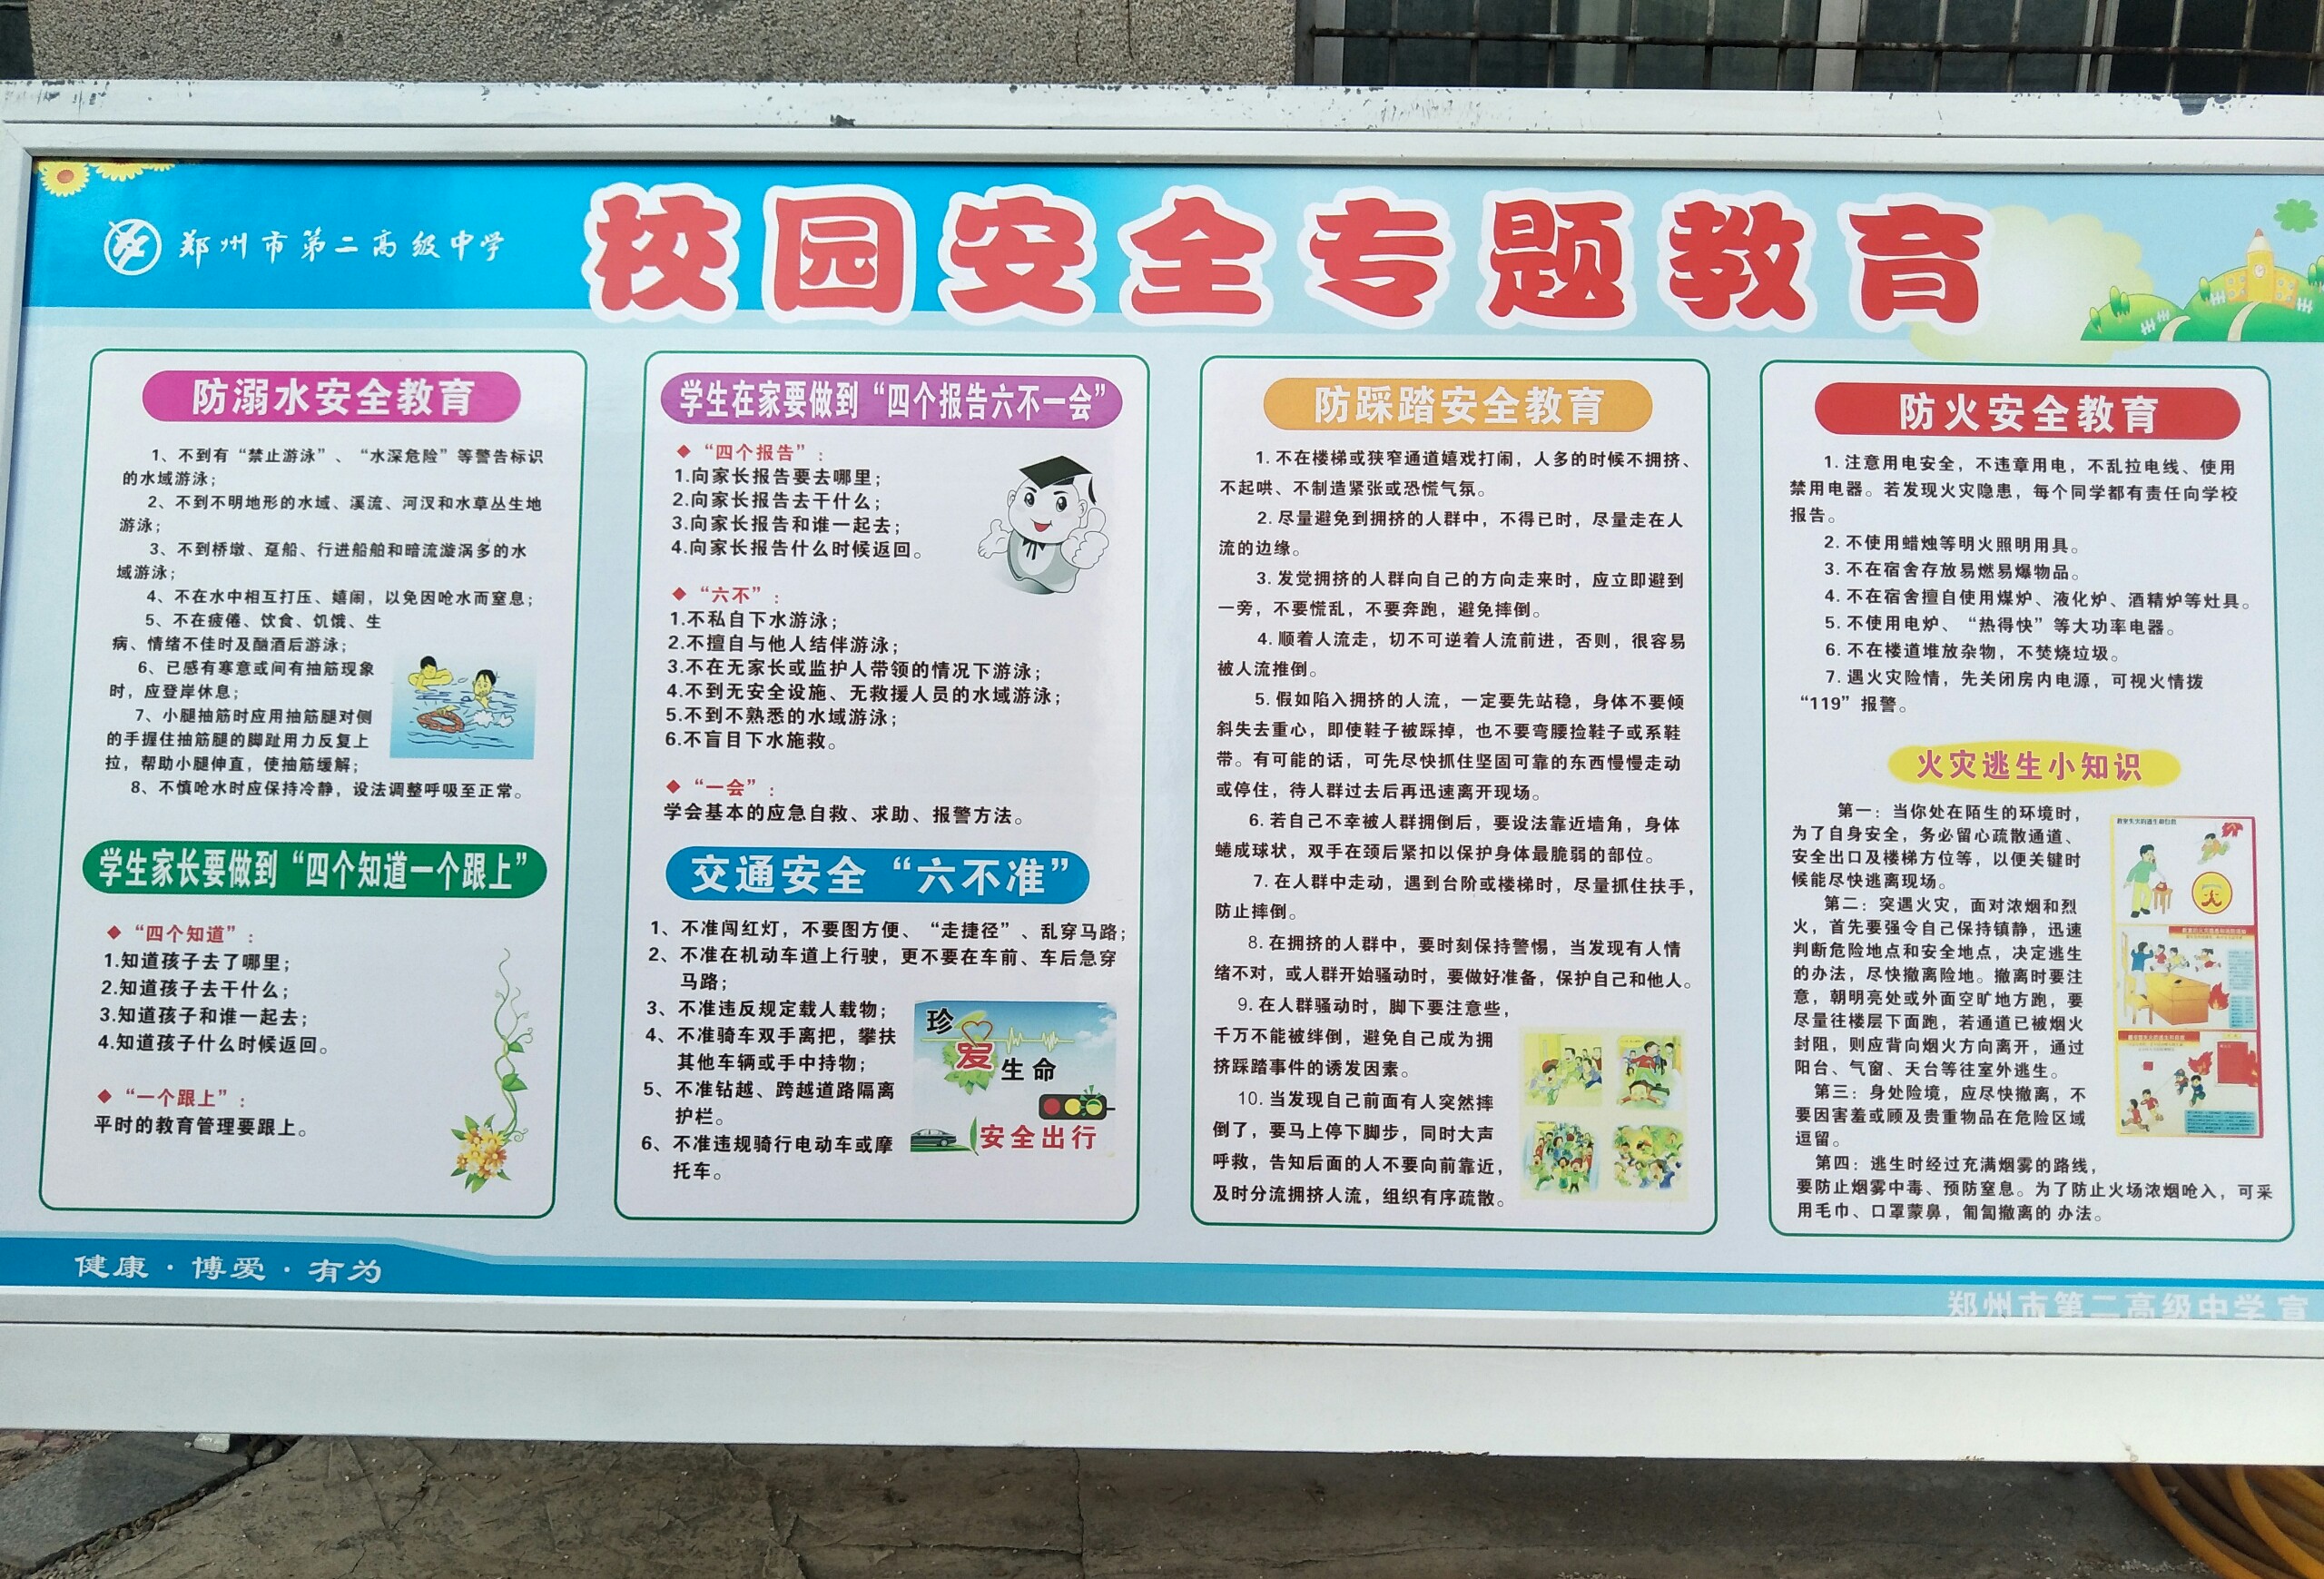 郑州市第二高级中学加强宣传教育 筑牢校园交通安全防线